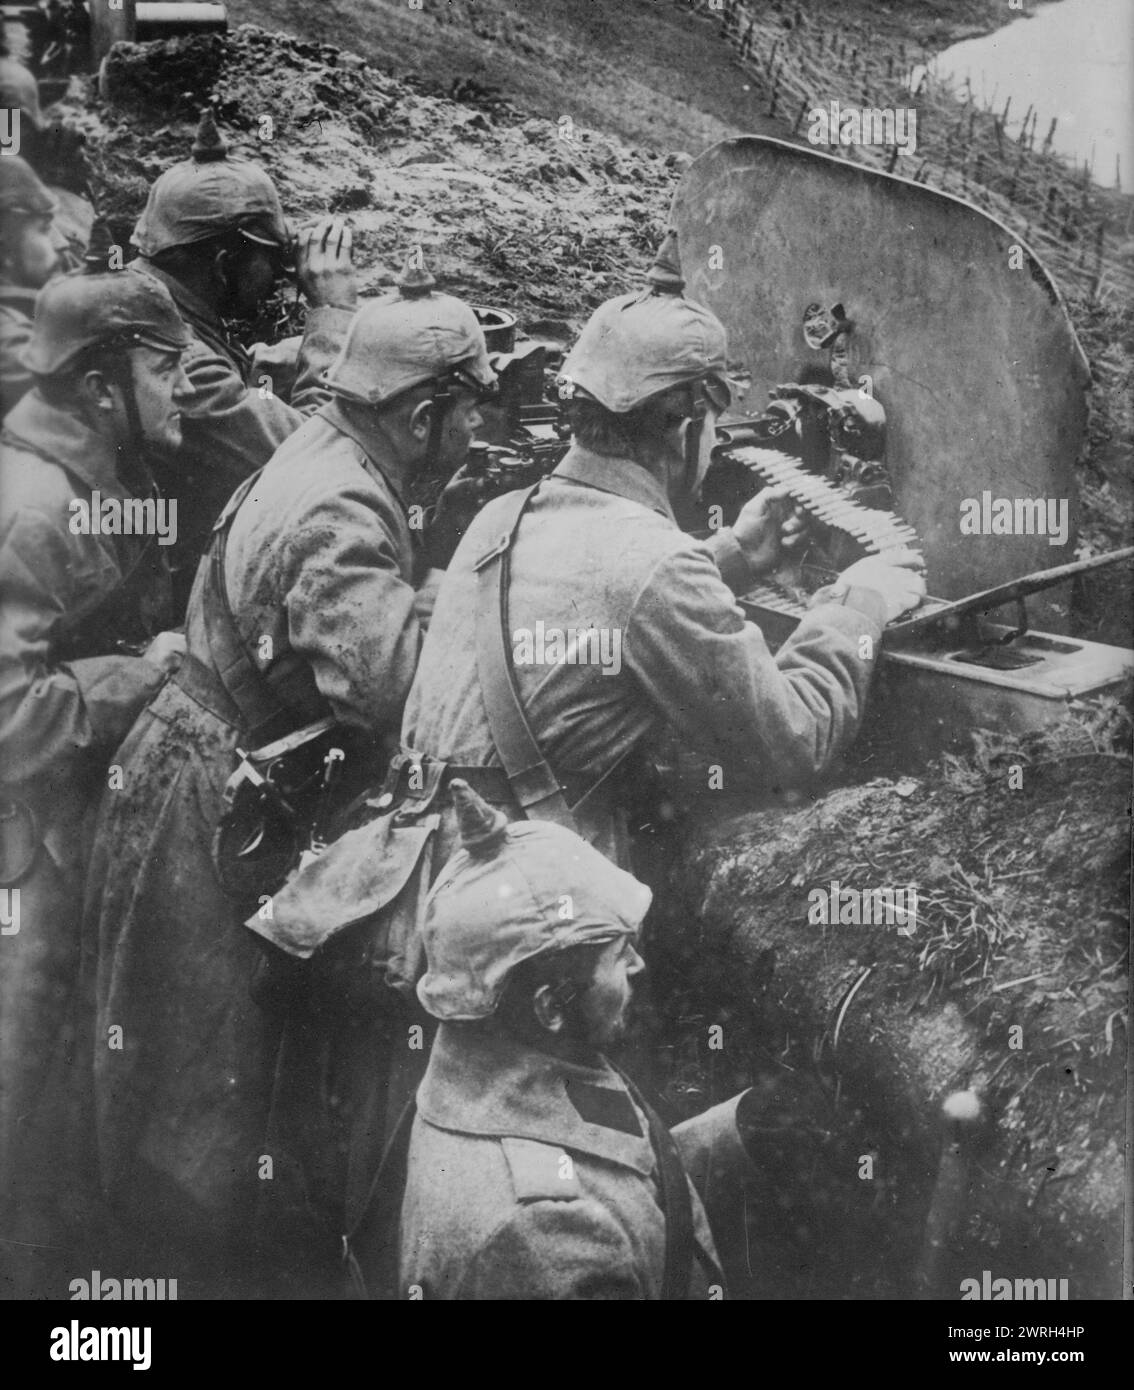 Arme allemande de travail contre les Russes, entre 1914 et 1915. Soldats allemands avec mitrailleuse pendant la première Guerre mondiale Banque D'Images